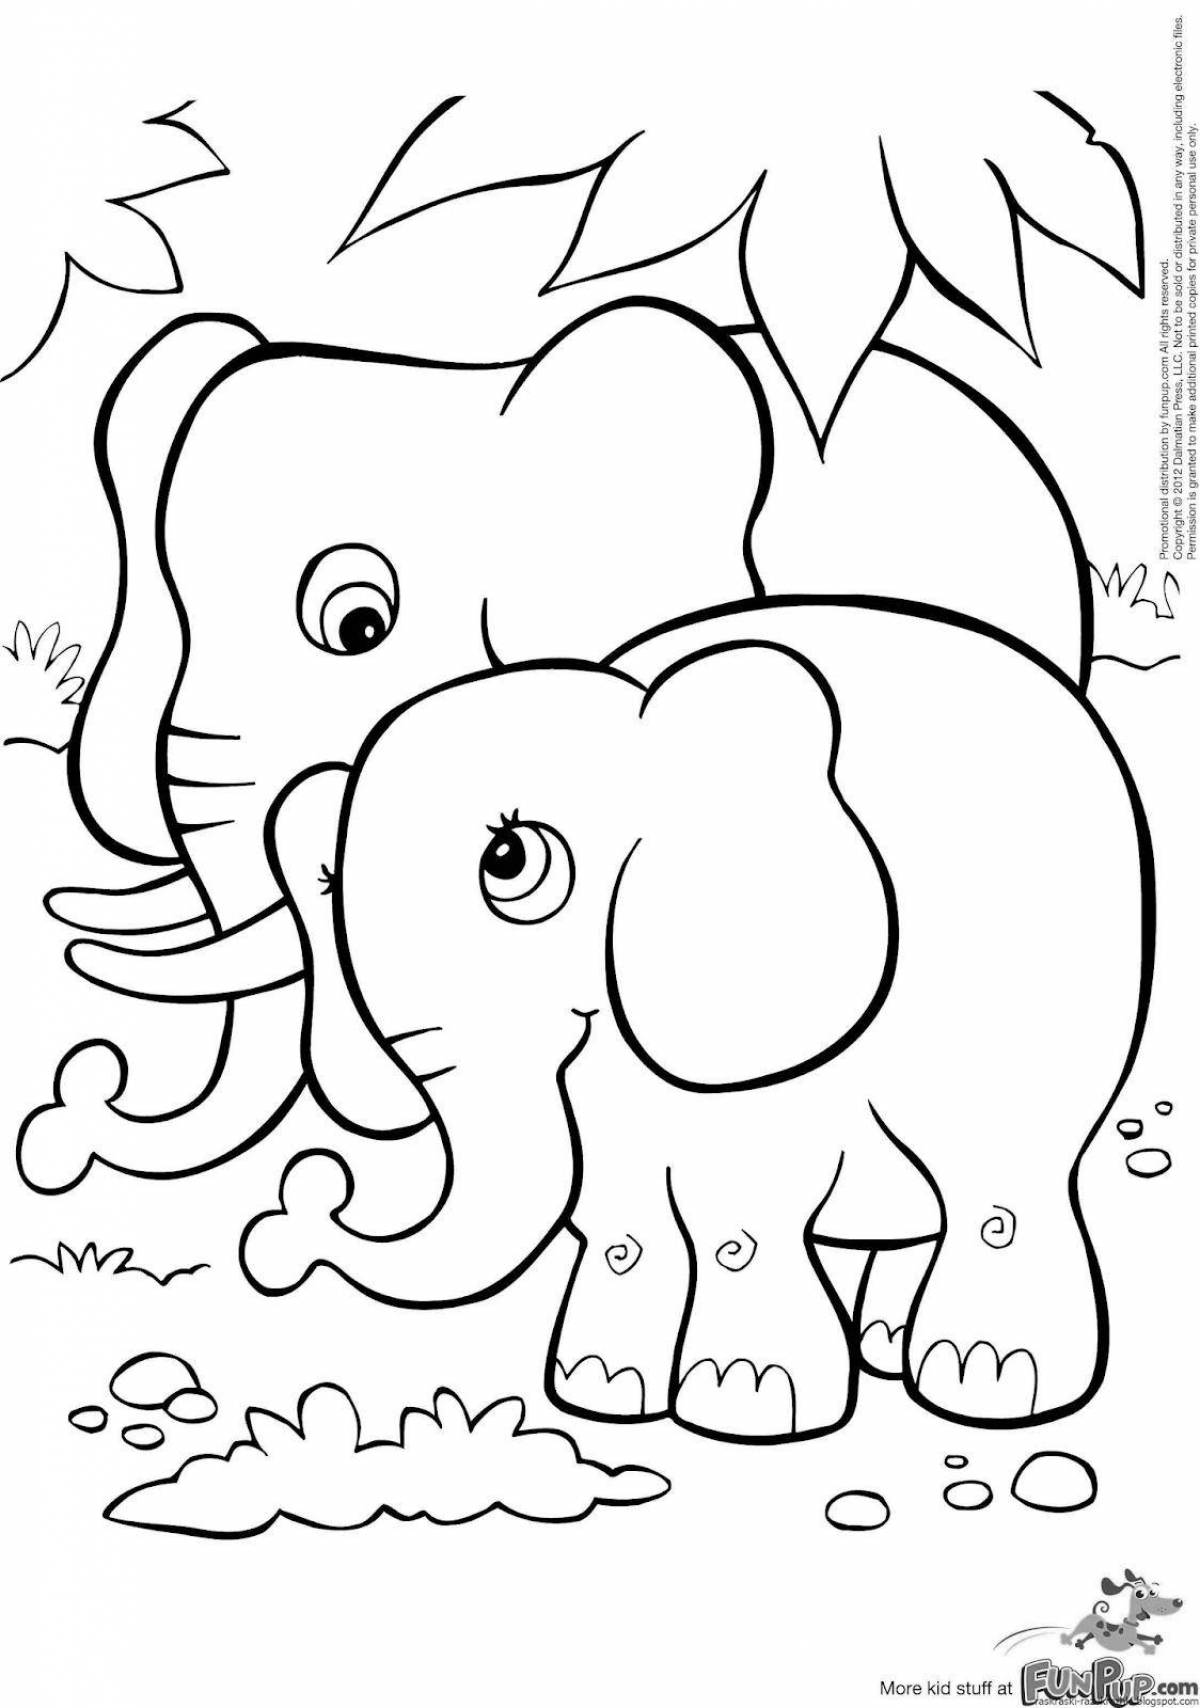 Очаровательная раскраска с изображением слона